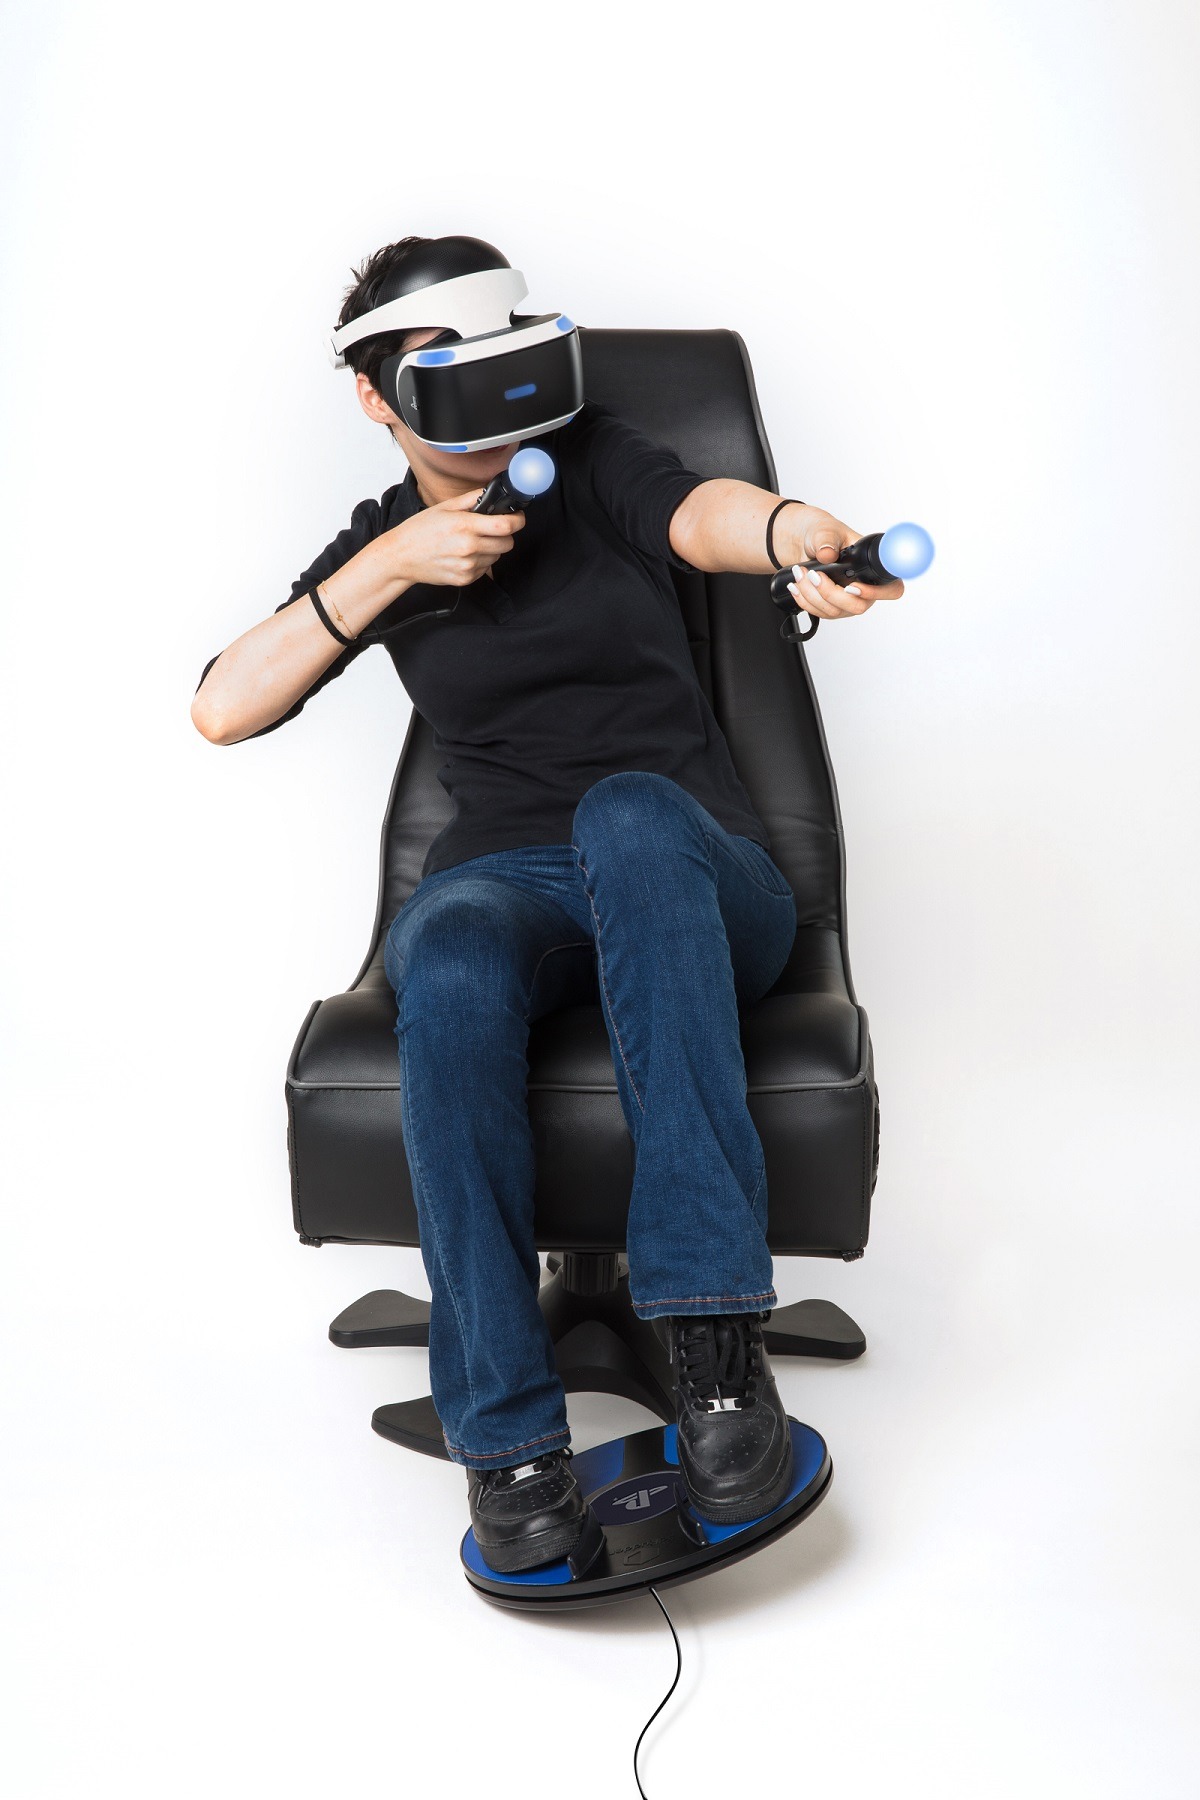 Игры виртуальной реальности с джойстиком на андроид. 3drudder foot Motion Controller для PLAYSTATION VR. Sony PLAYSTATION 4 VR + Controller. VR шлем для ps3. PLAYSTATION VR 3.